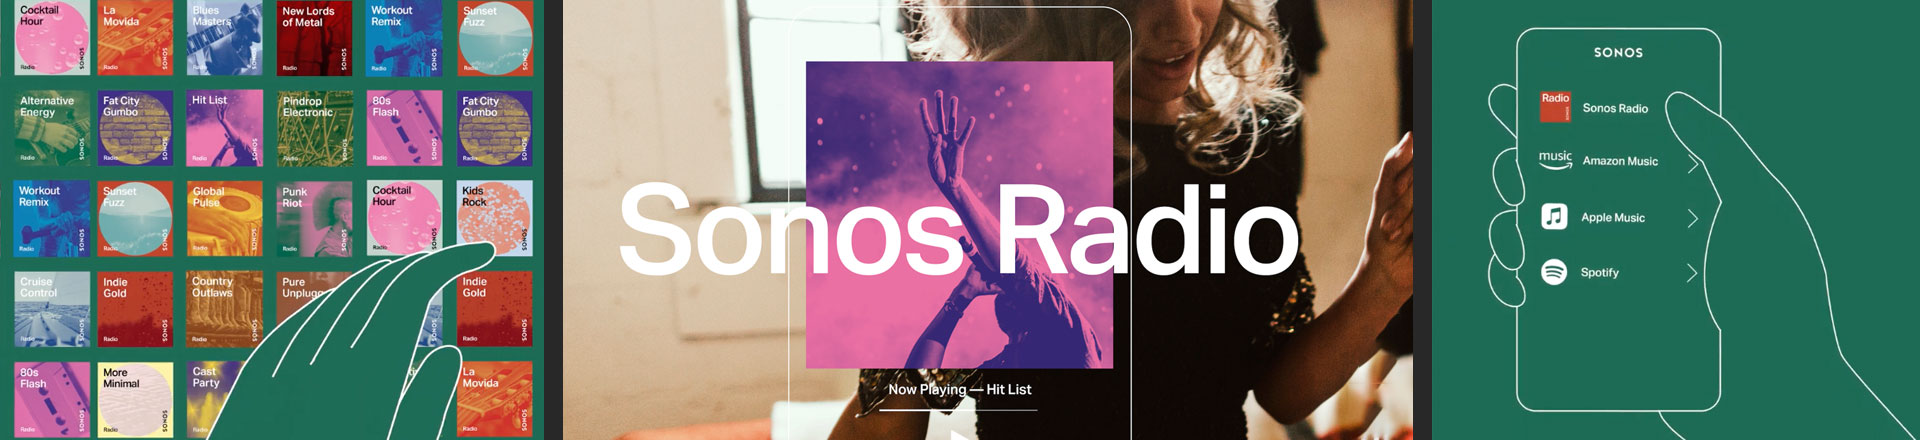 Można pozazdrościć właścicielom Sonos'a - otrzymali darmowy serwis stremingowy